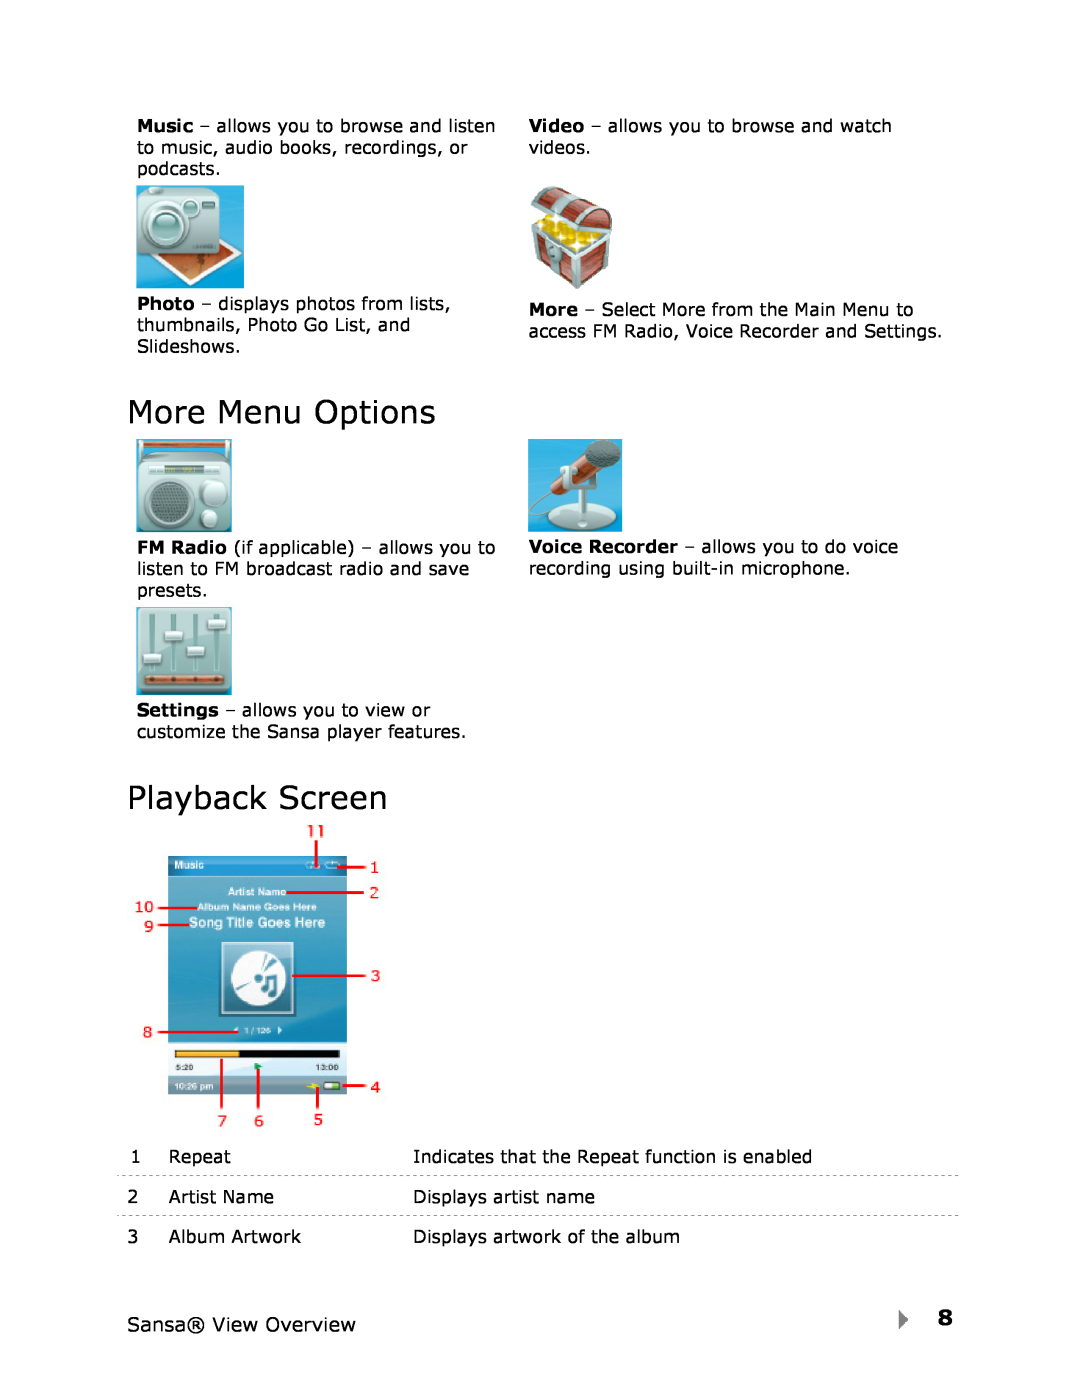 SanDisk View user manual More Menu Options, Playback Screen 